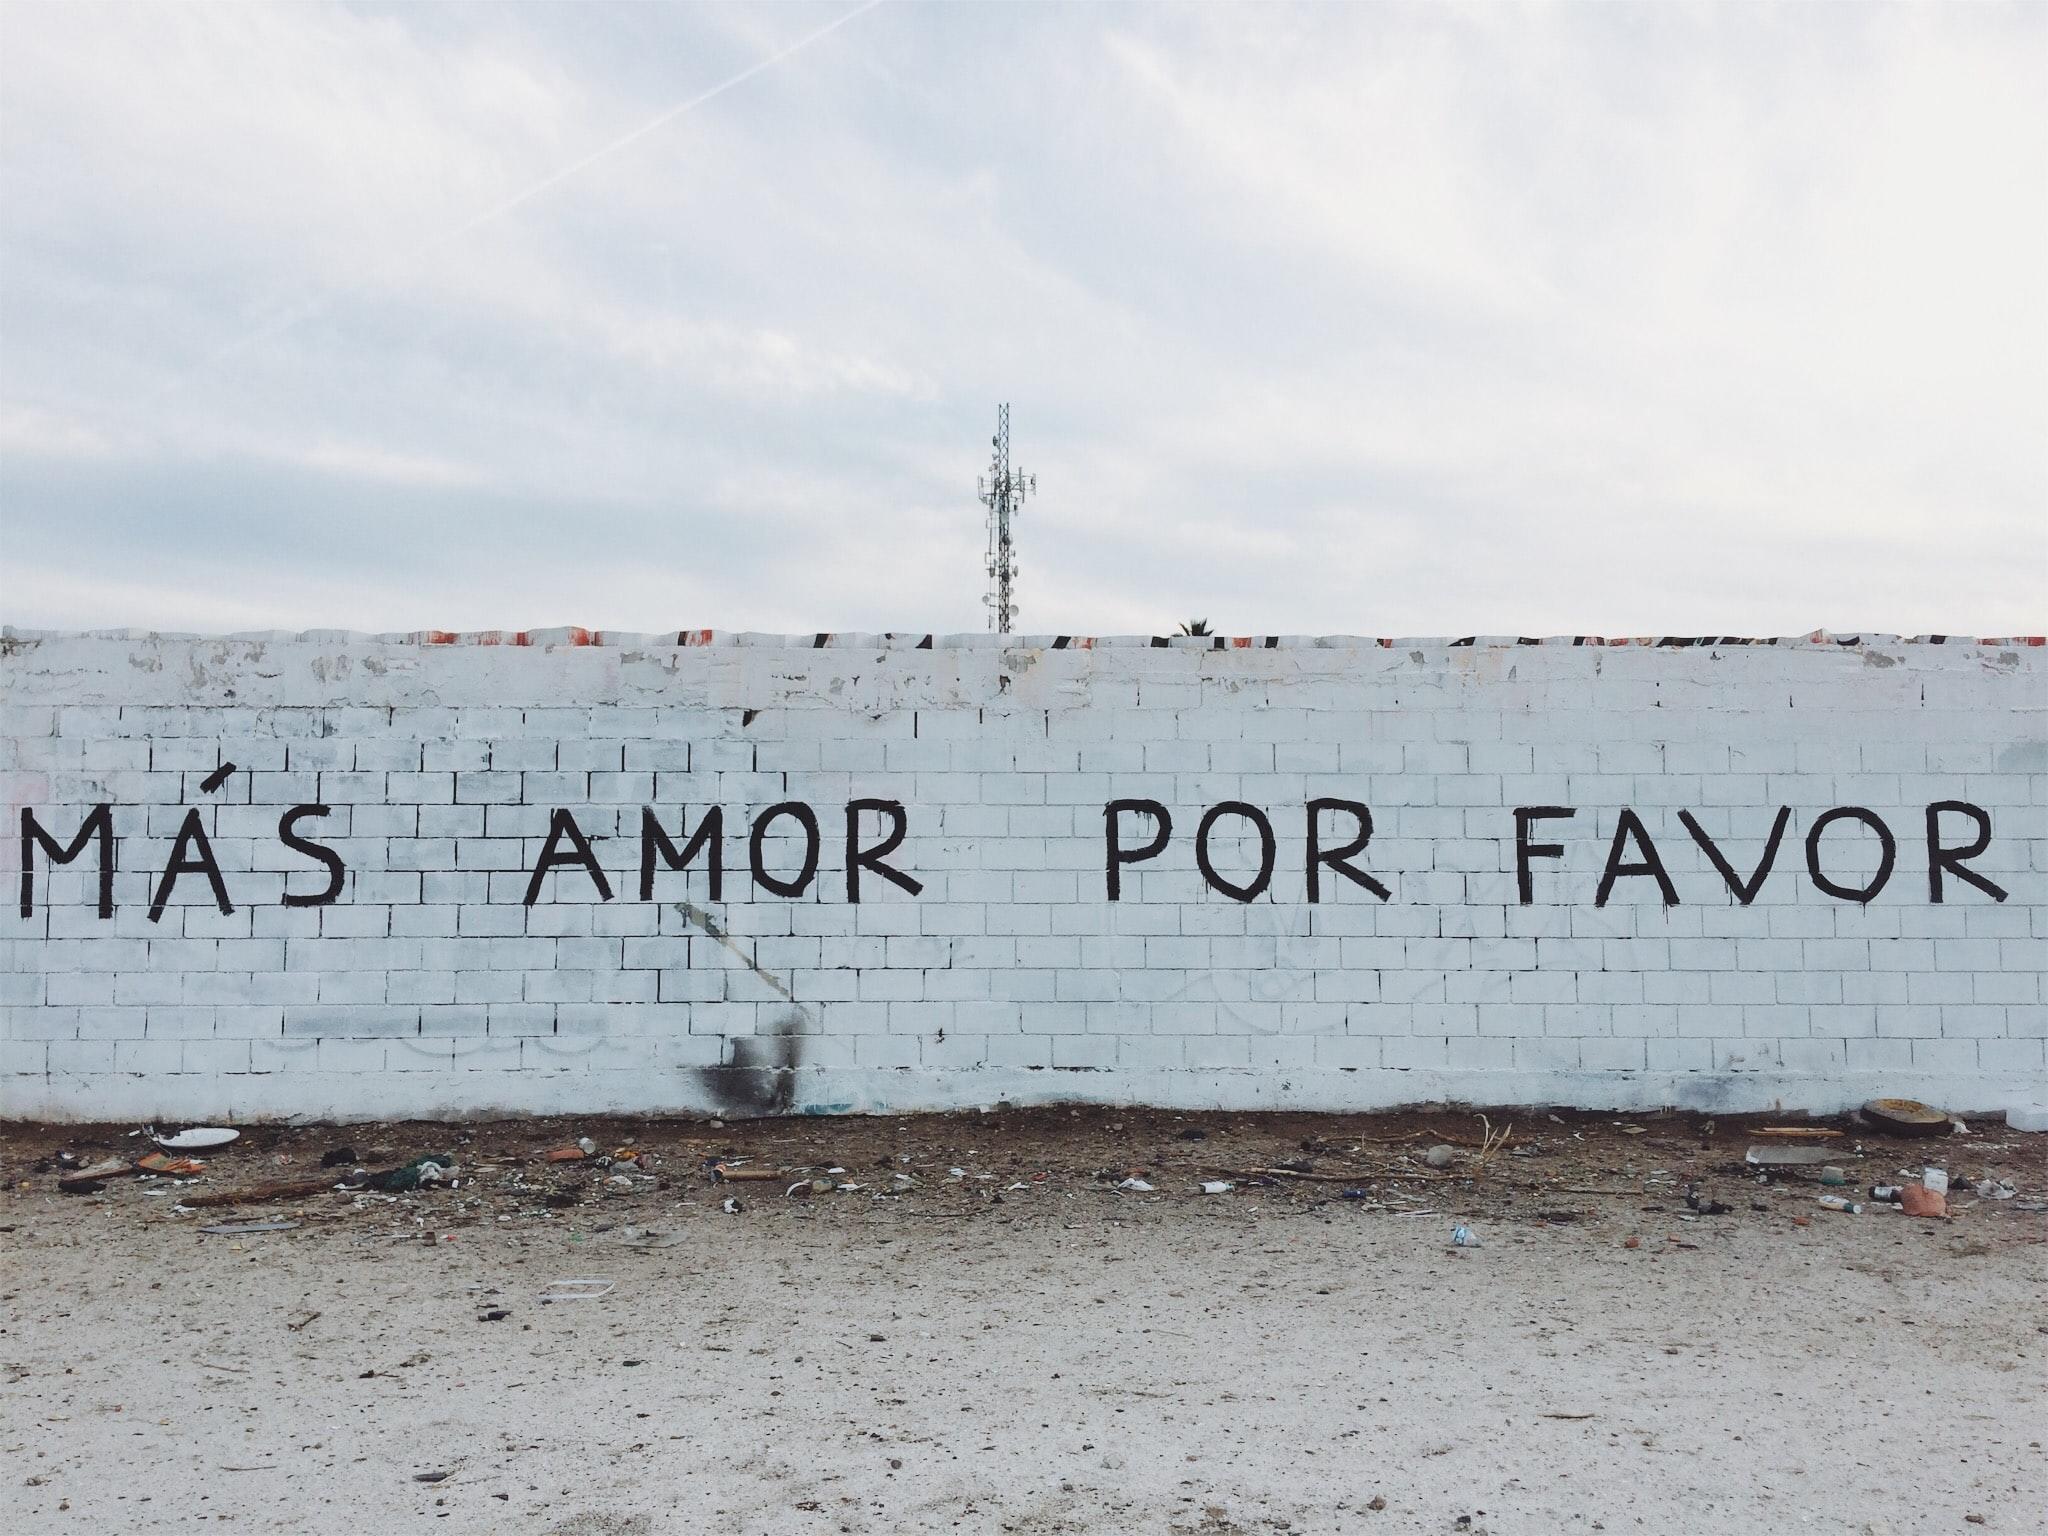 画在墙上的西班牙语句子，意思是“请给我更多爱”。